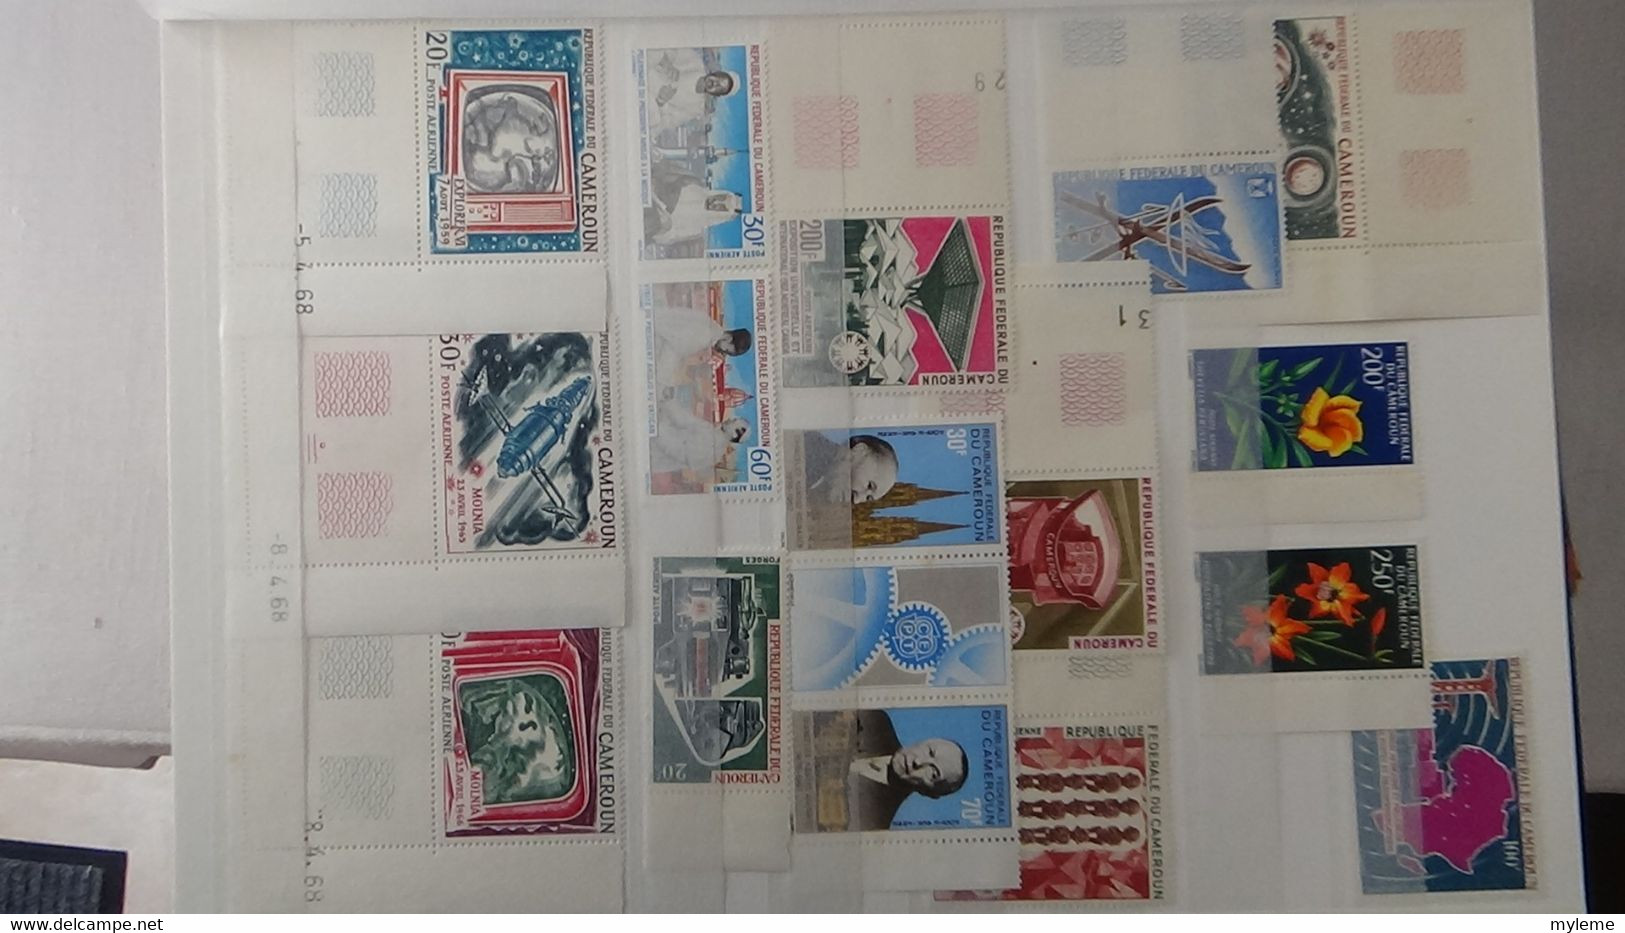 L44 Collection timbres ** de différents pays d'Afrique dont Algérie, Cambodge, Cameroun, Centrafri ... Voir commentaires